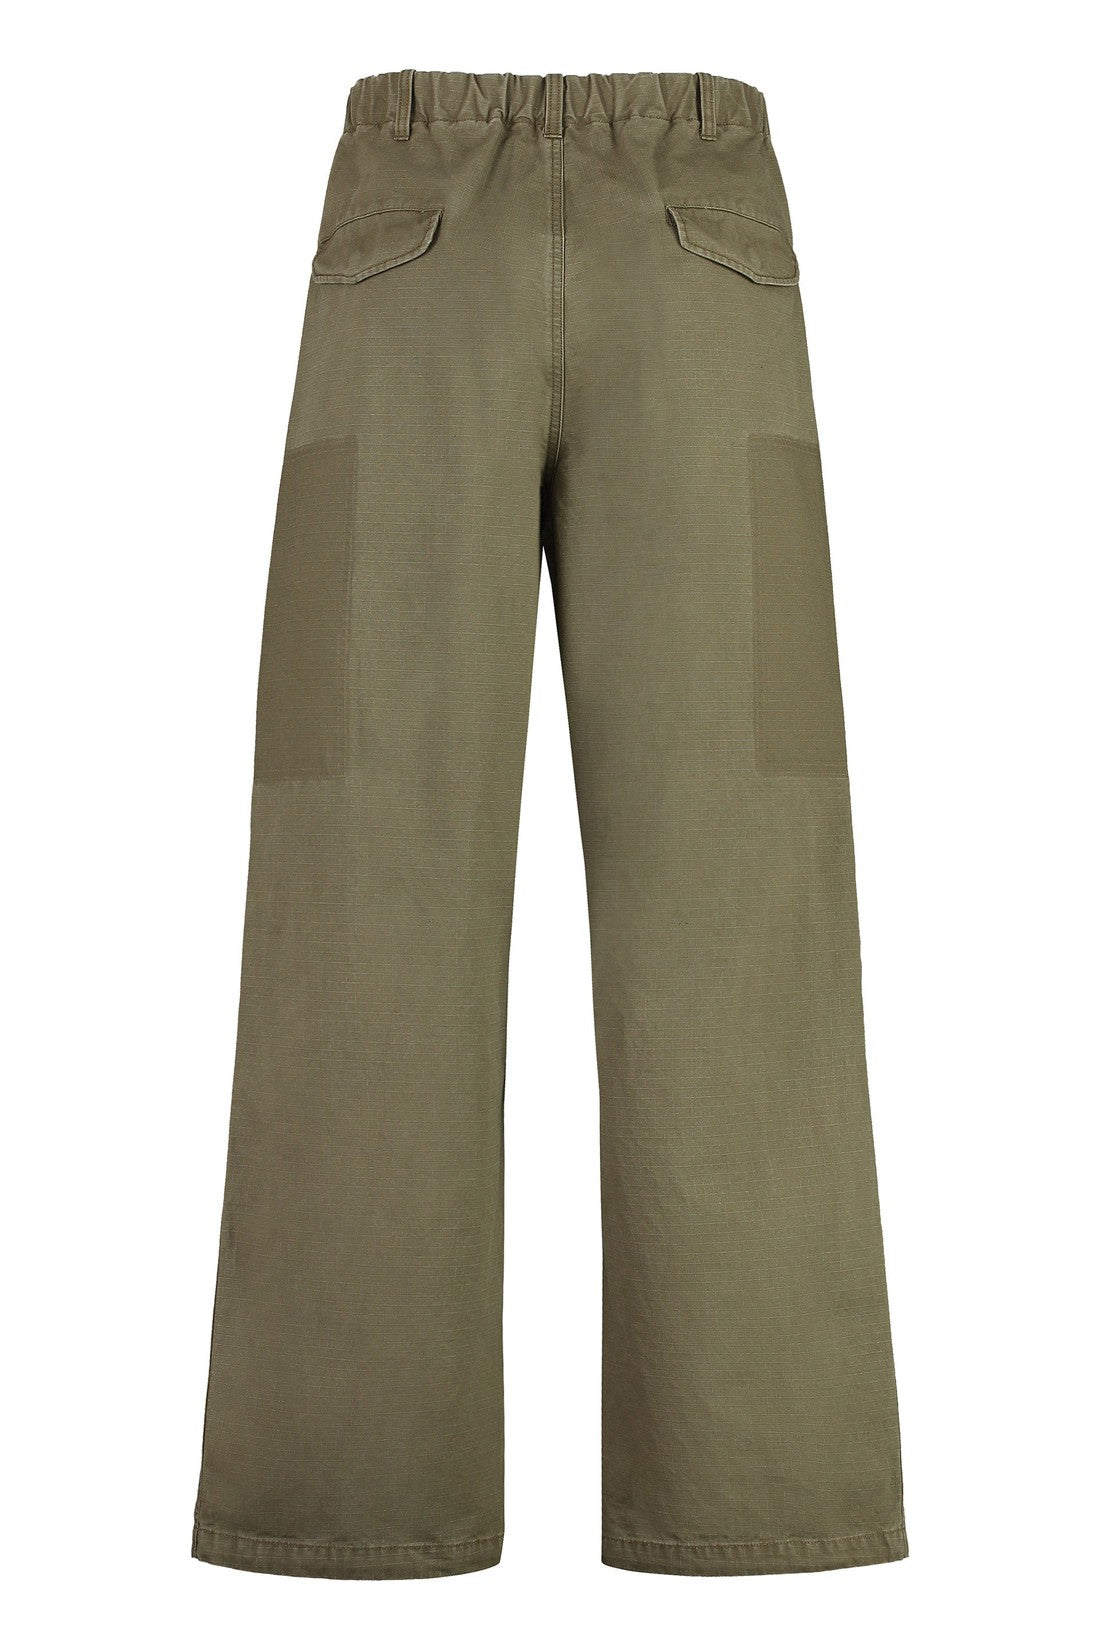 Maison Mihara Yasuhiro-OUTLET-SALE-Cotton trousers-ARCHIVIST